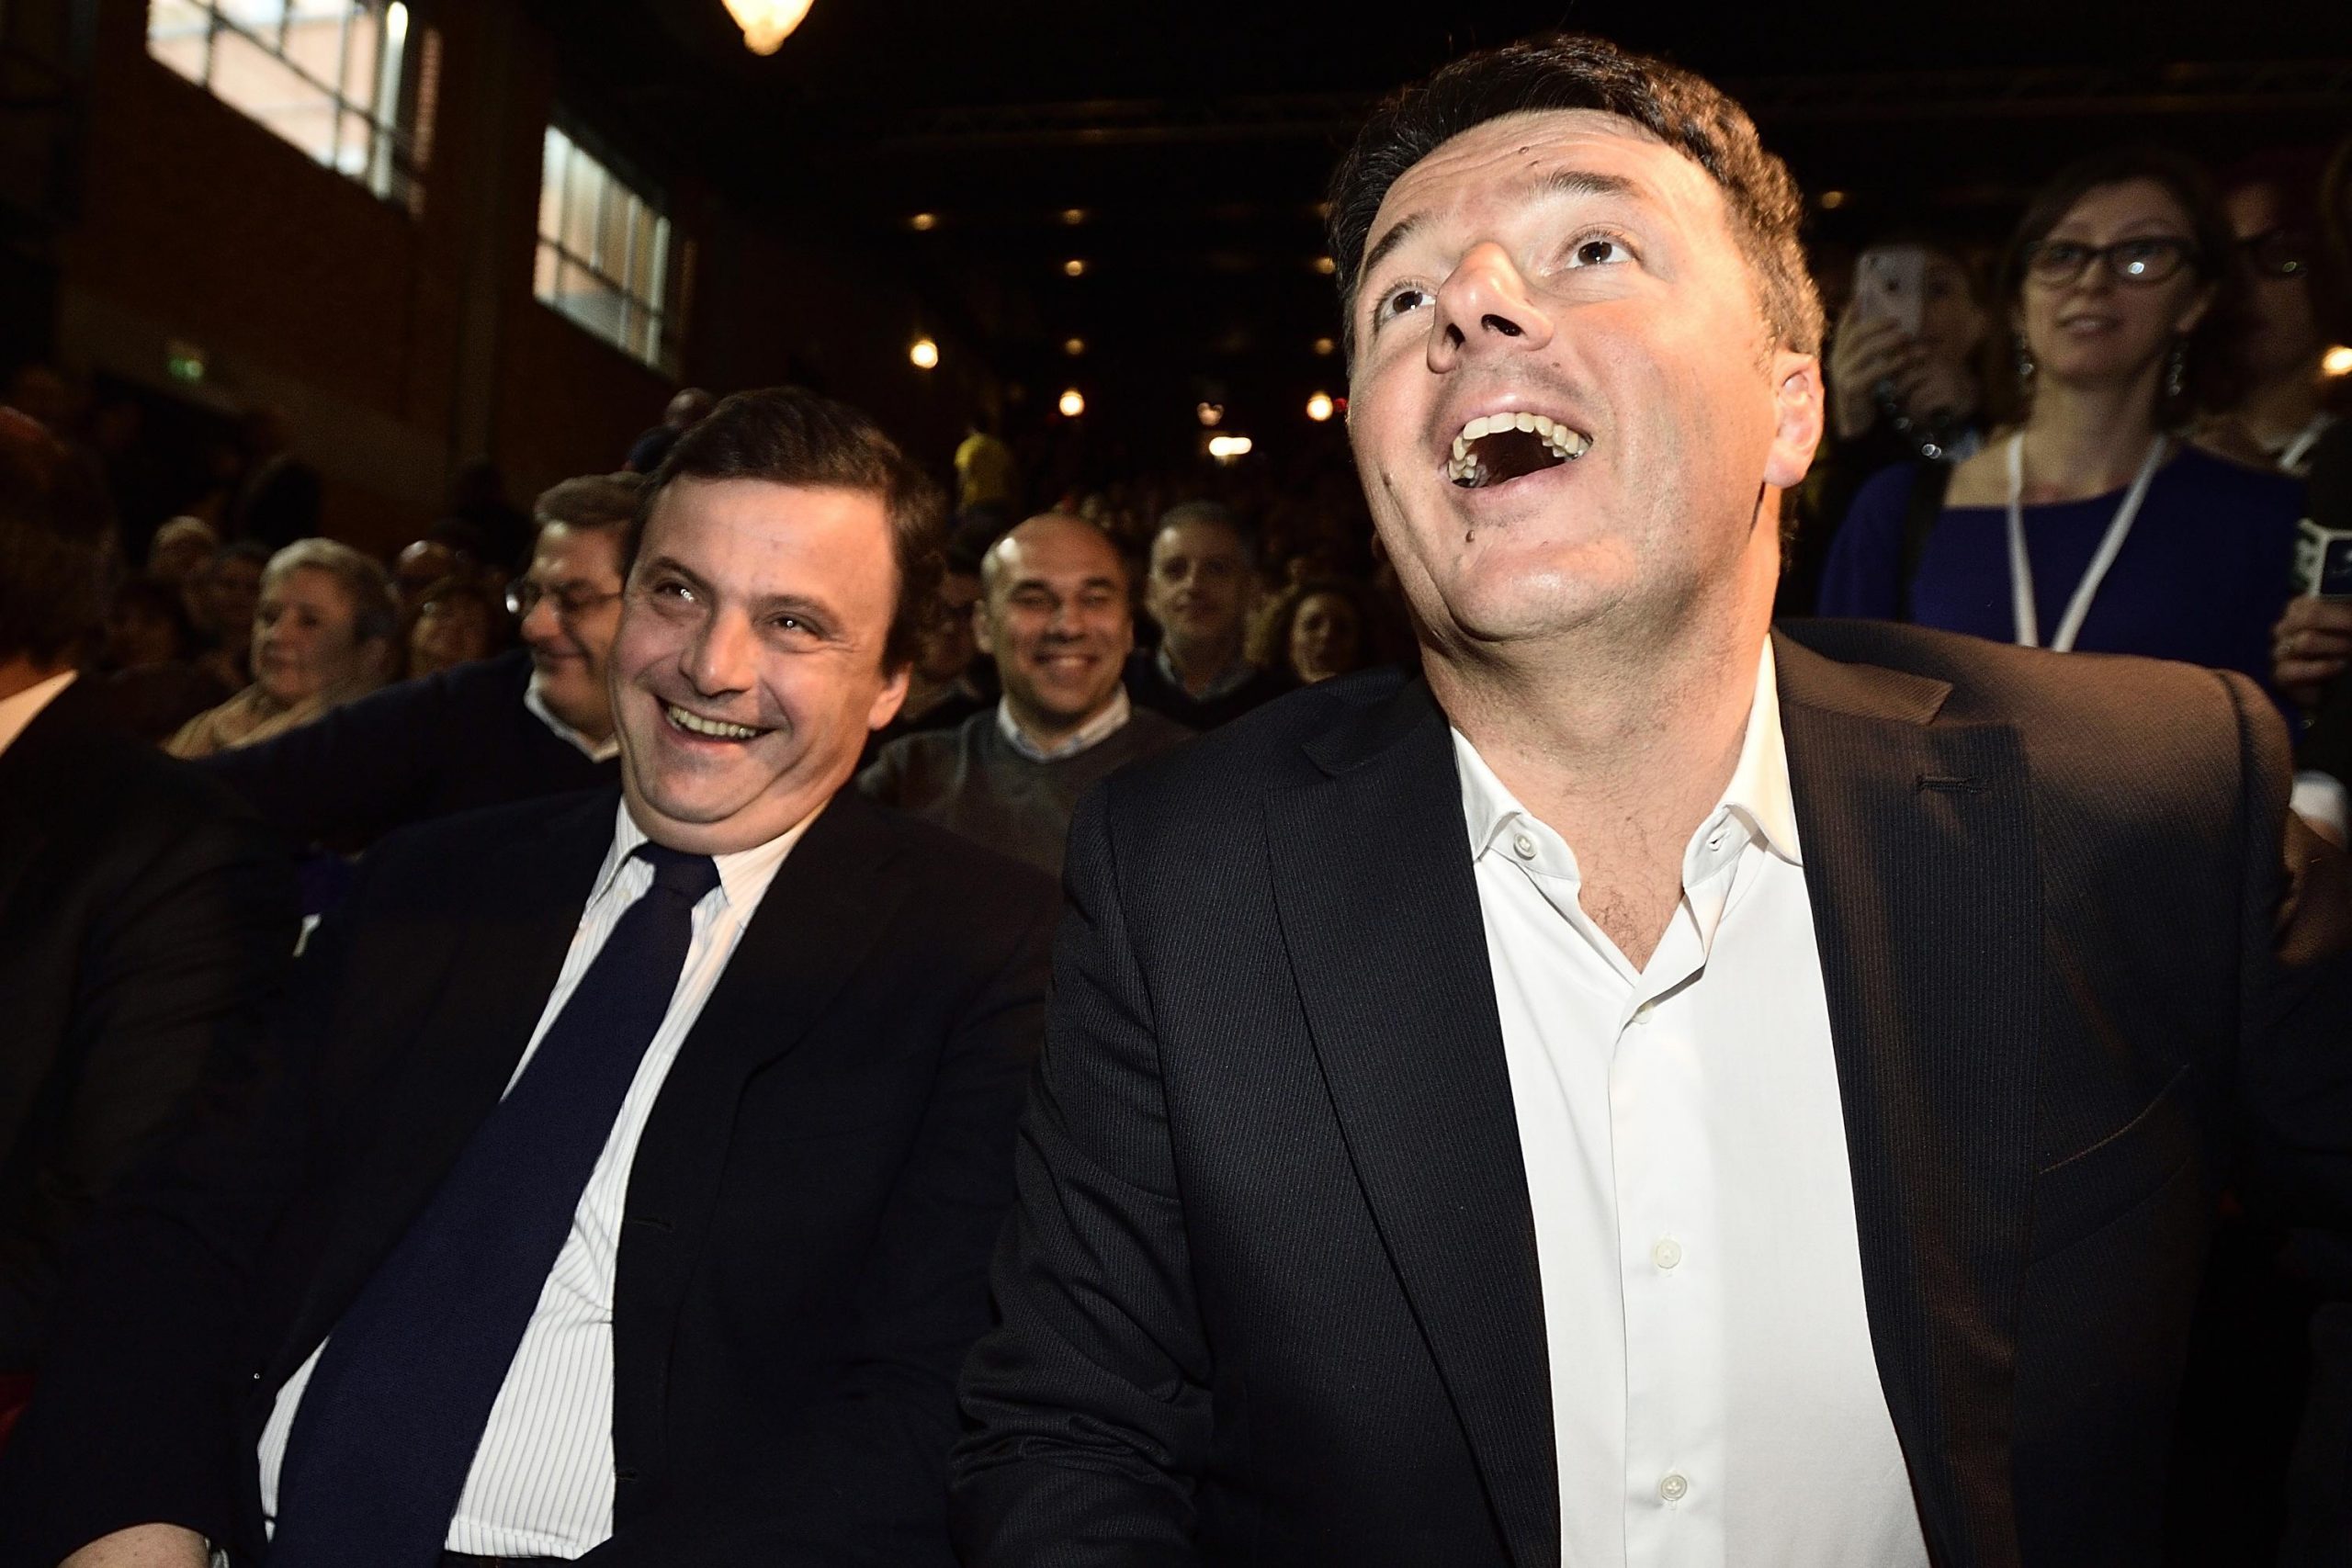 Elezioni, Calenda: "Con Renzi stiamo lavorando a una lista unica, abbiamo raggiunto degli accordi"